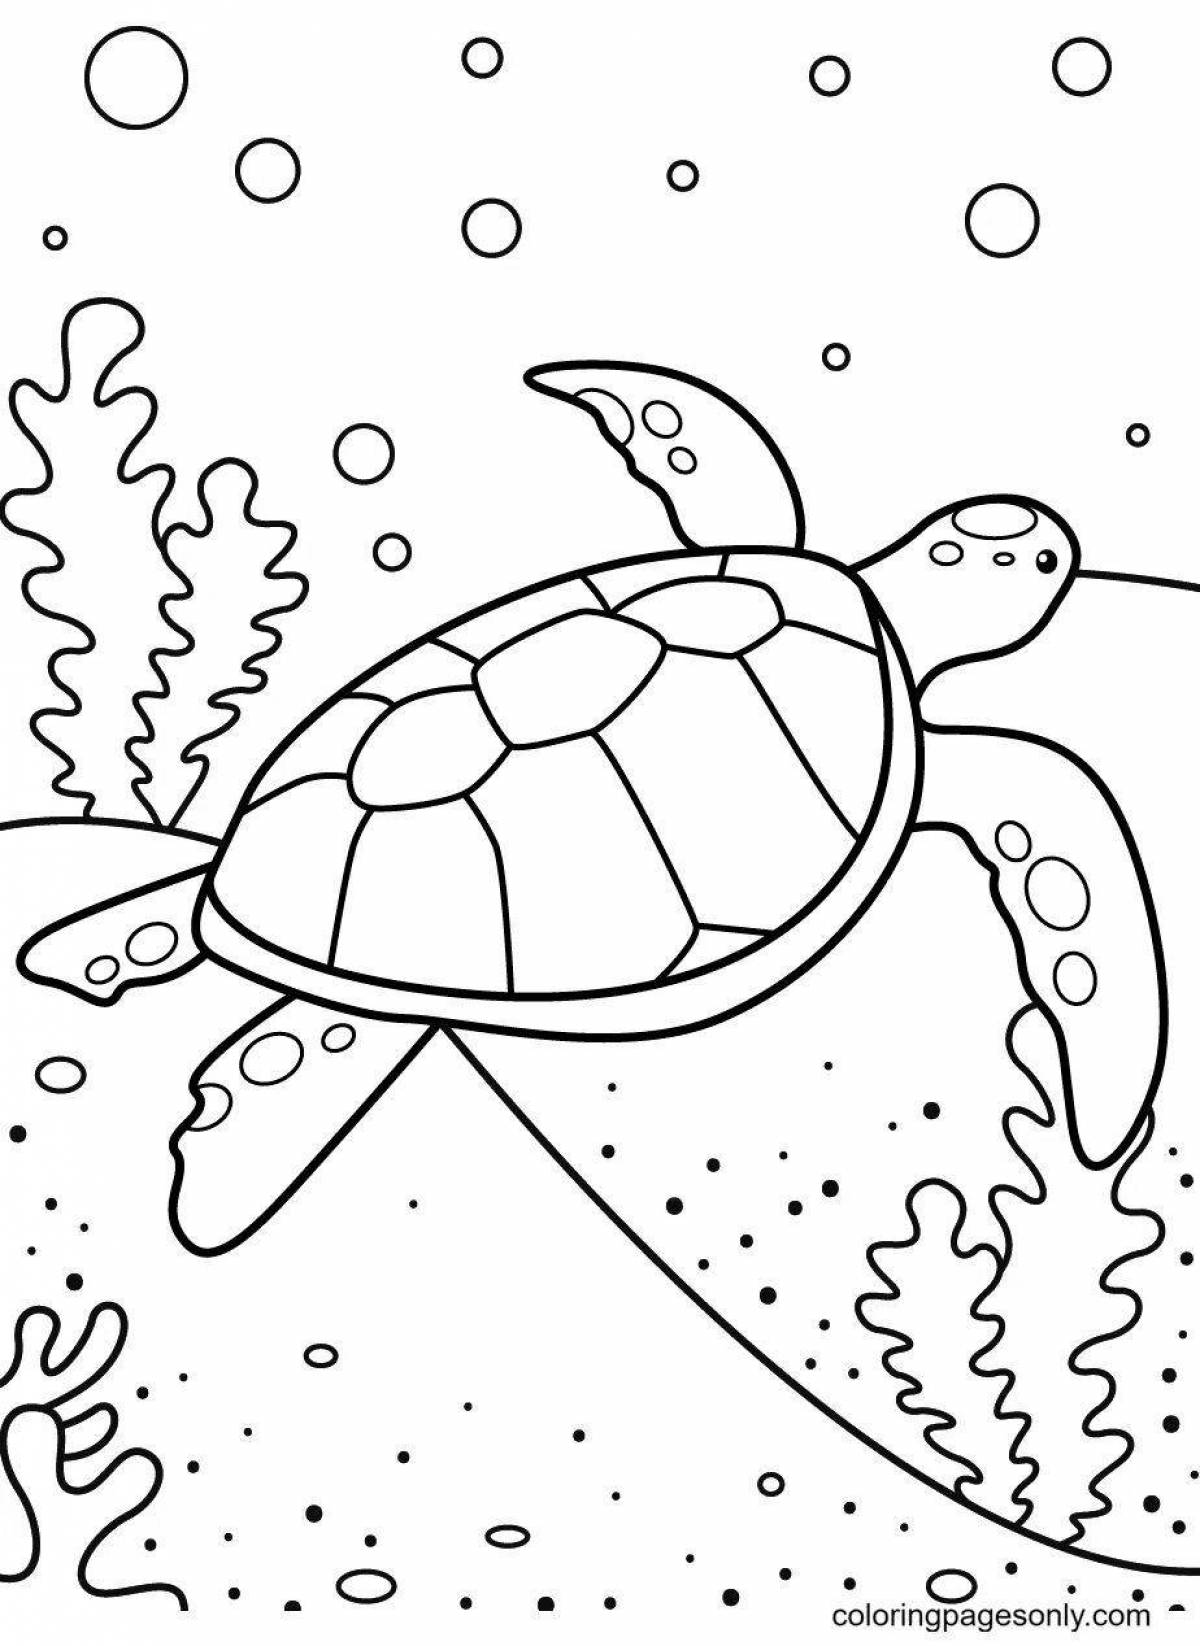 Великолепная морская черепаха раскраски для детей